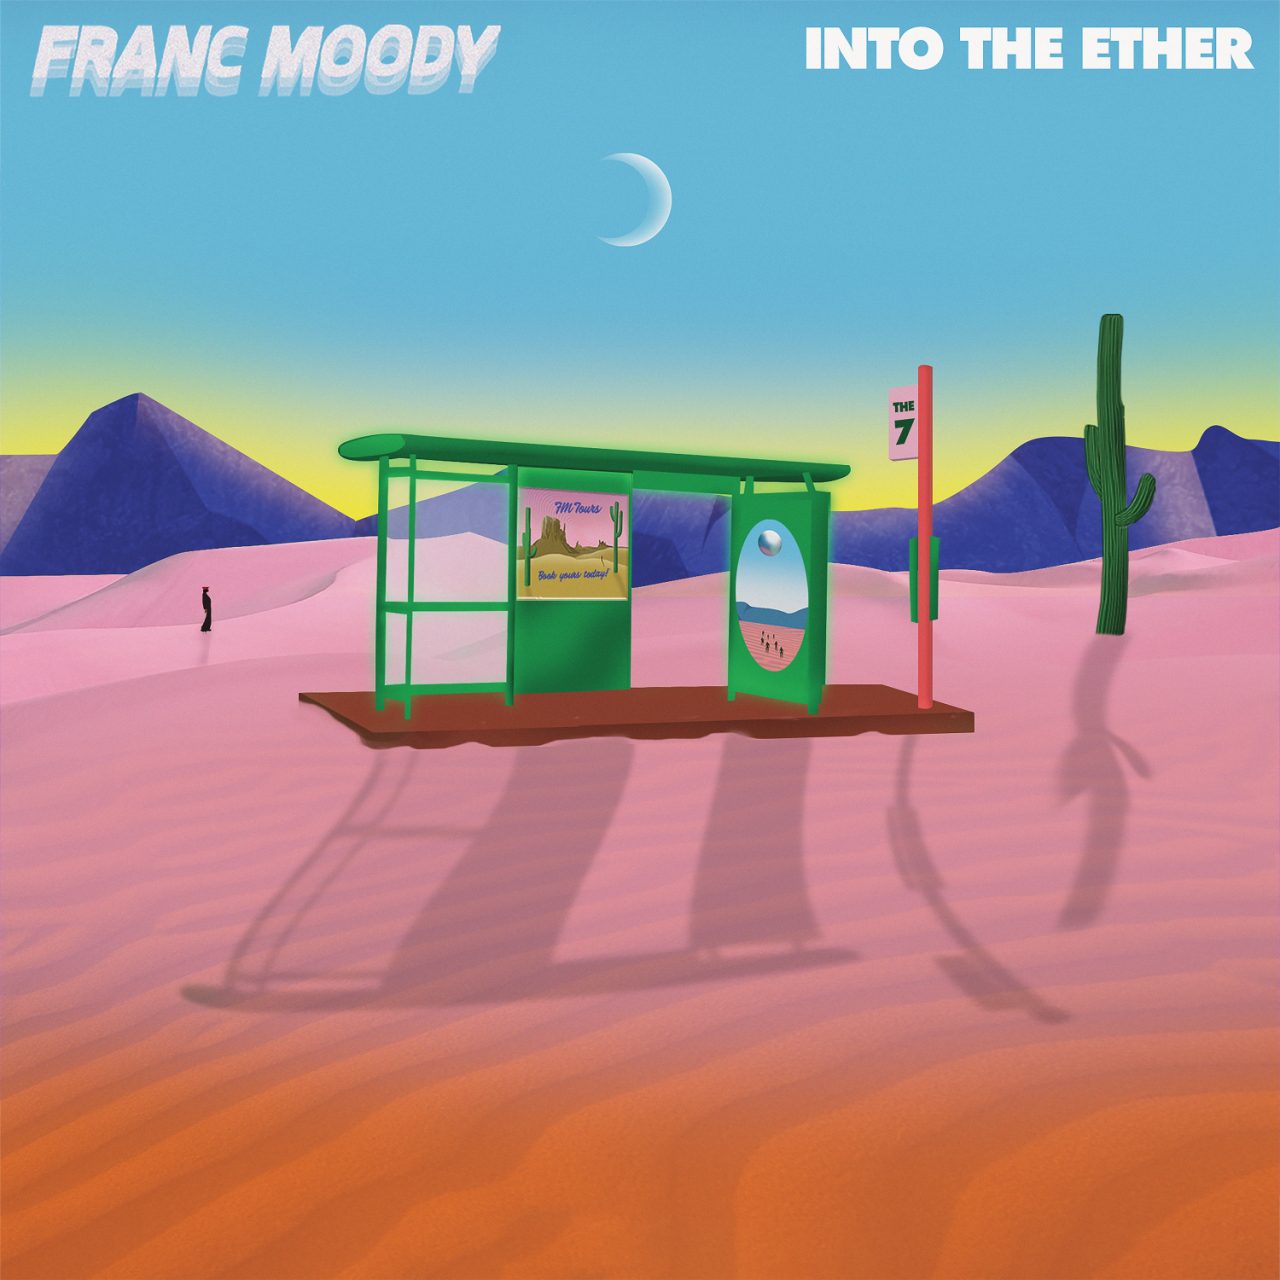 Das Albumcover "Into The Ether" von Franc Moody zeigt eine animierte Wüste mit einer Bushaltestelle, einem Kaktus und Bergen. Im Hintergrund sind auch ein Mensch und der Mond zu erkennen.